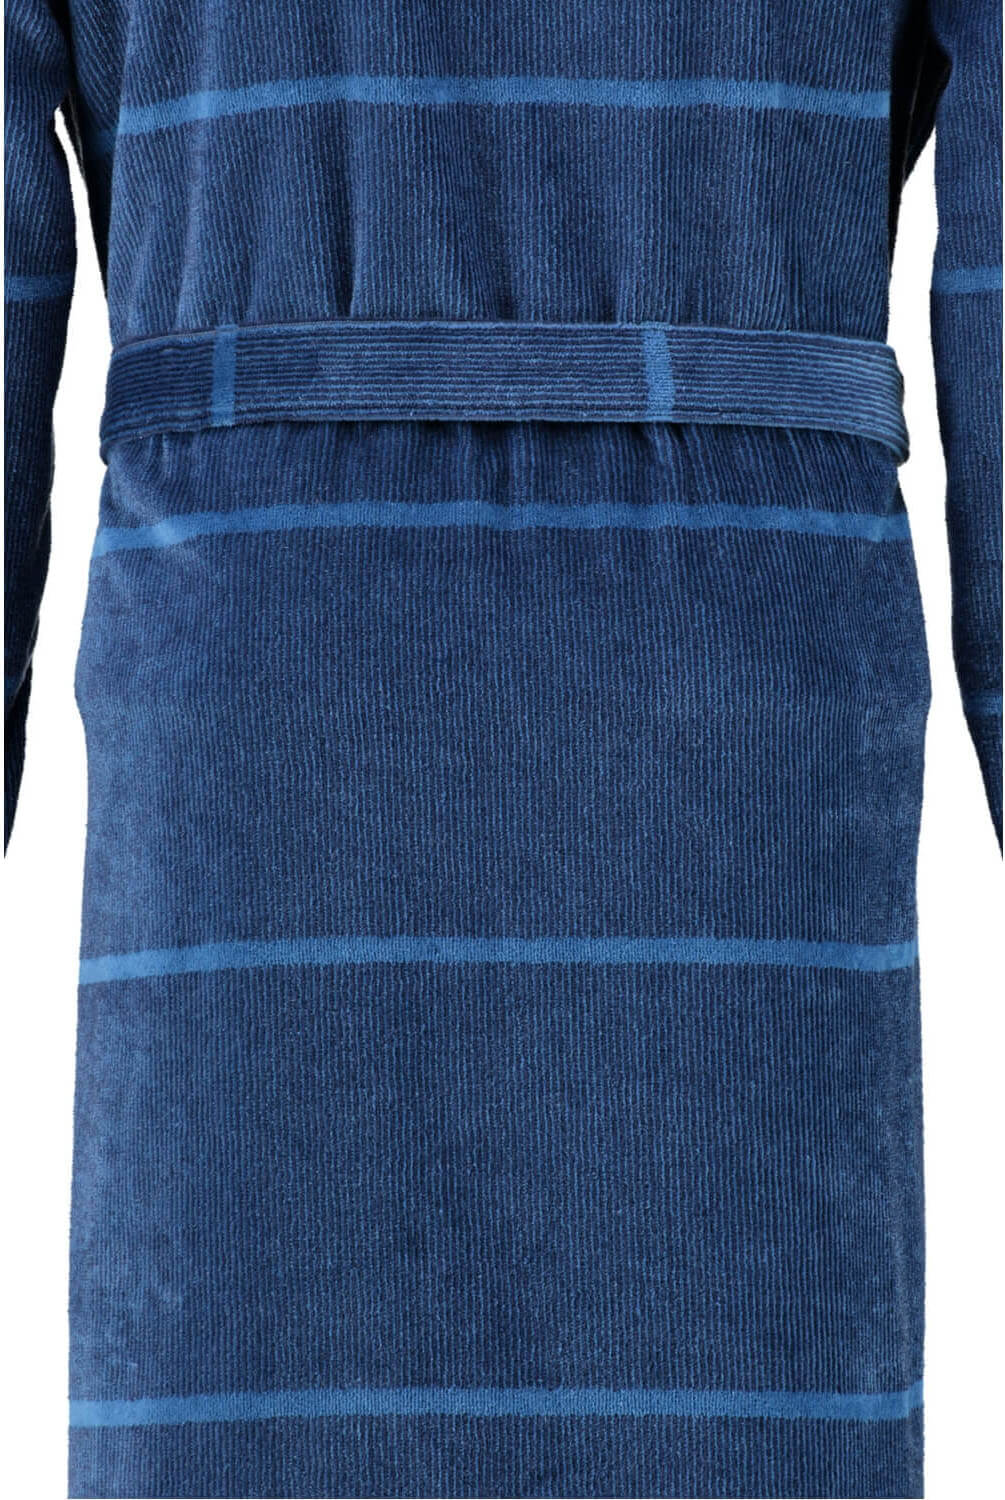 Мужской халат Cawo Kimono Blau ☞ Размер: 56